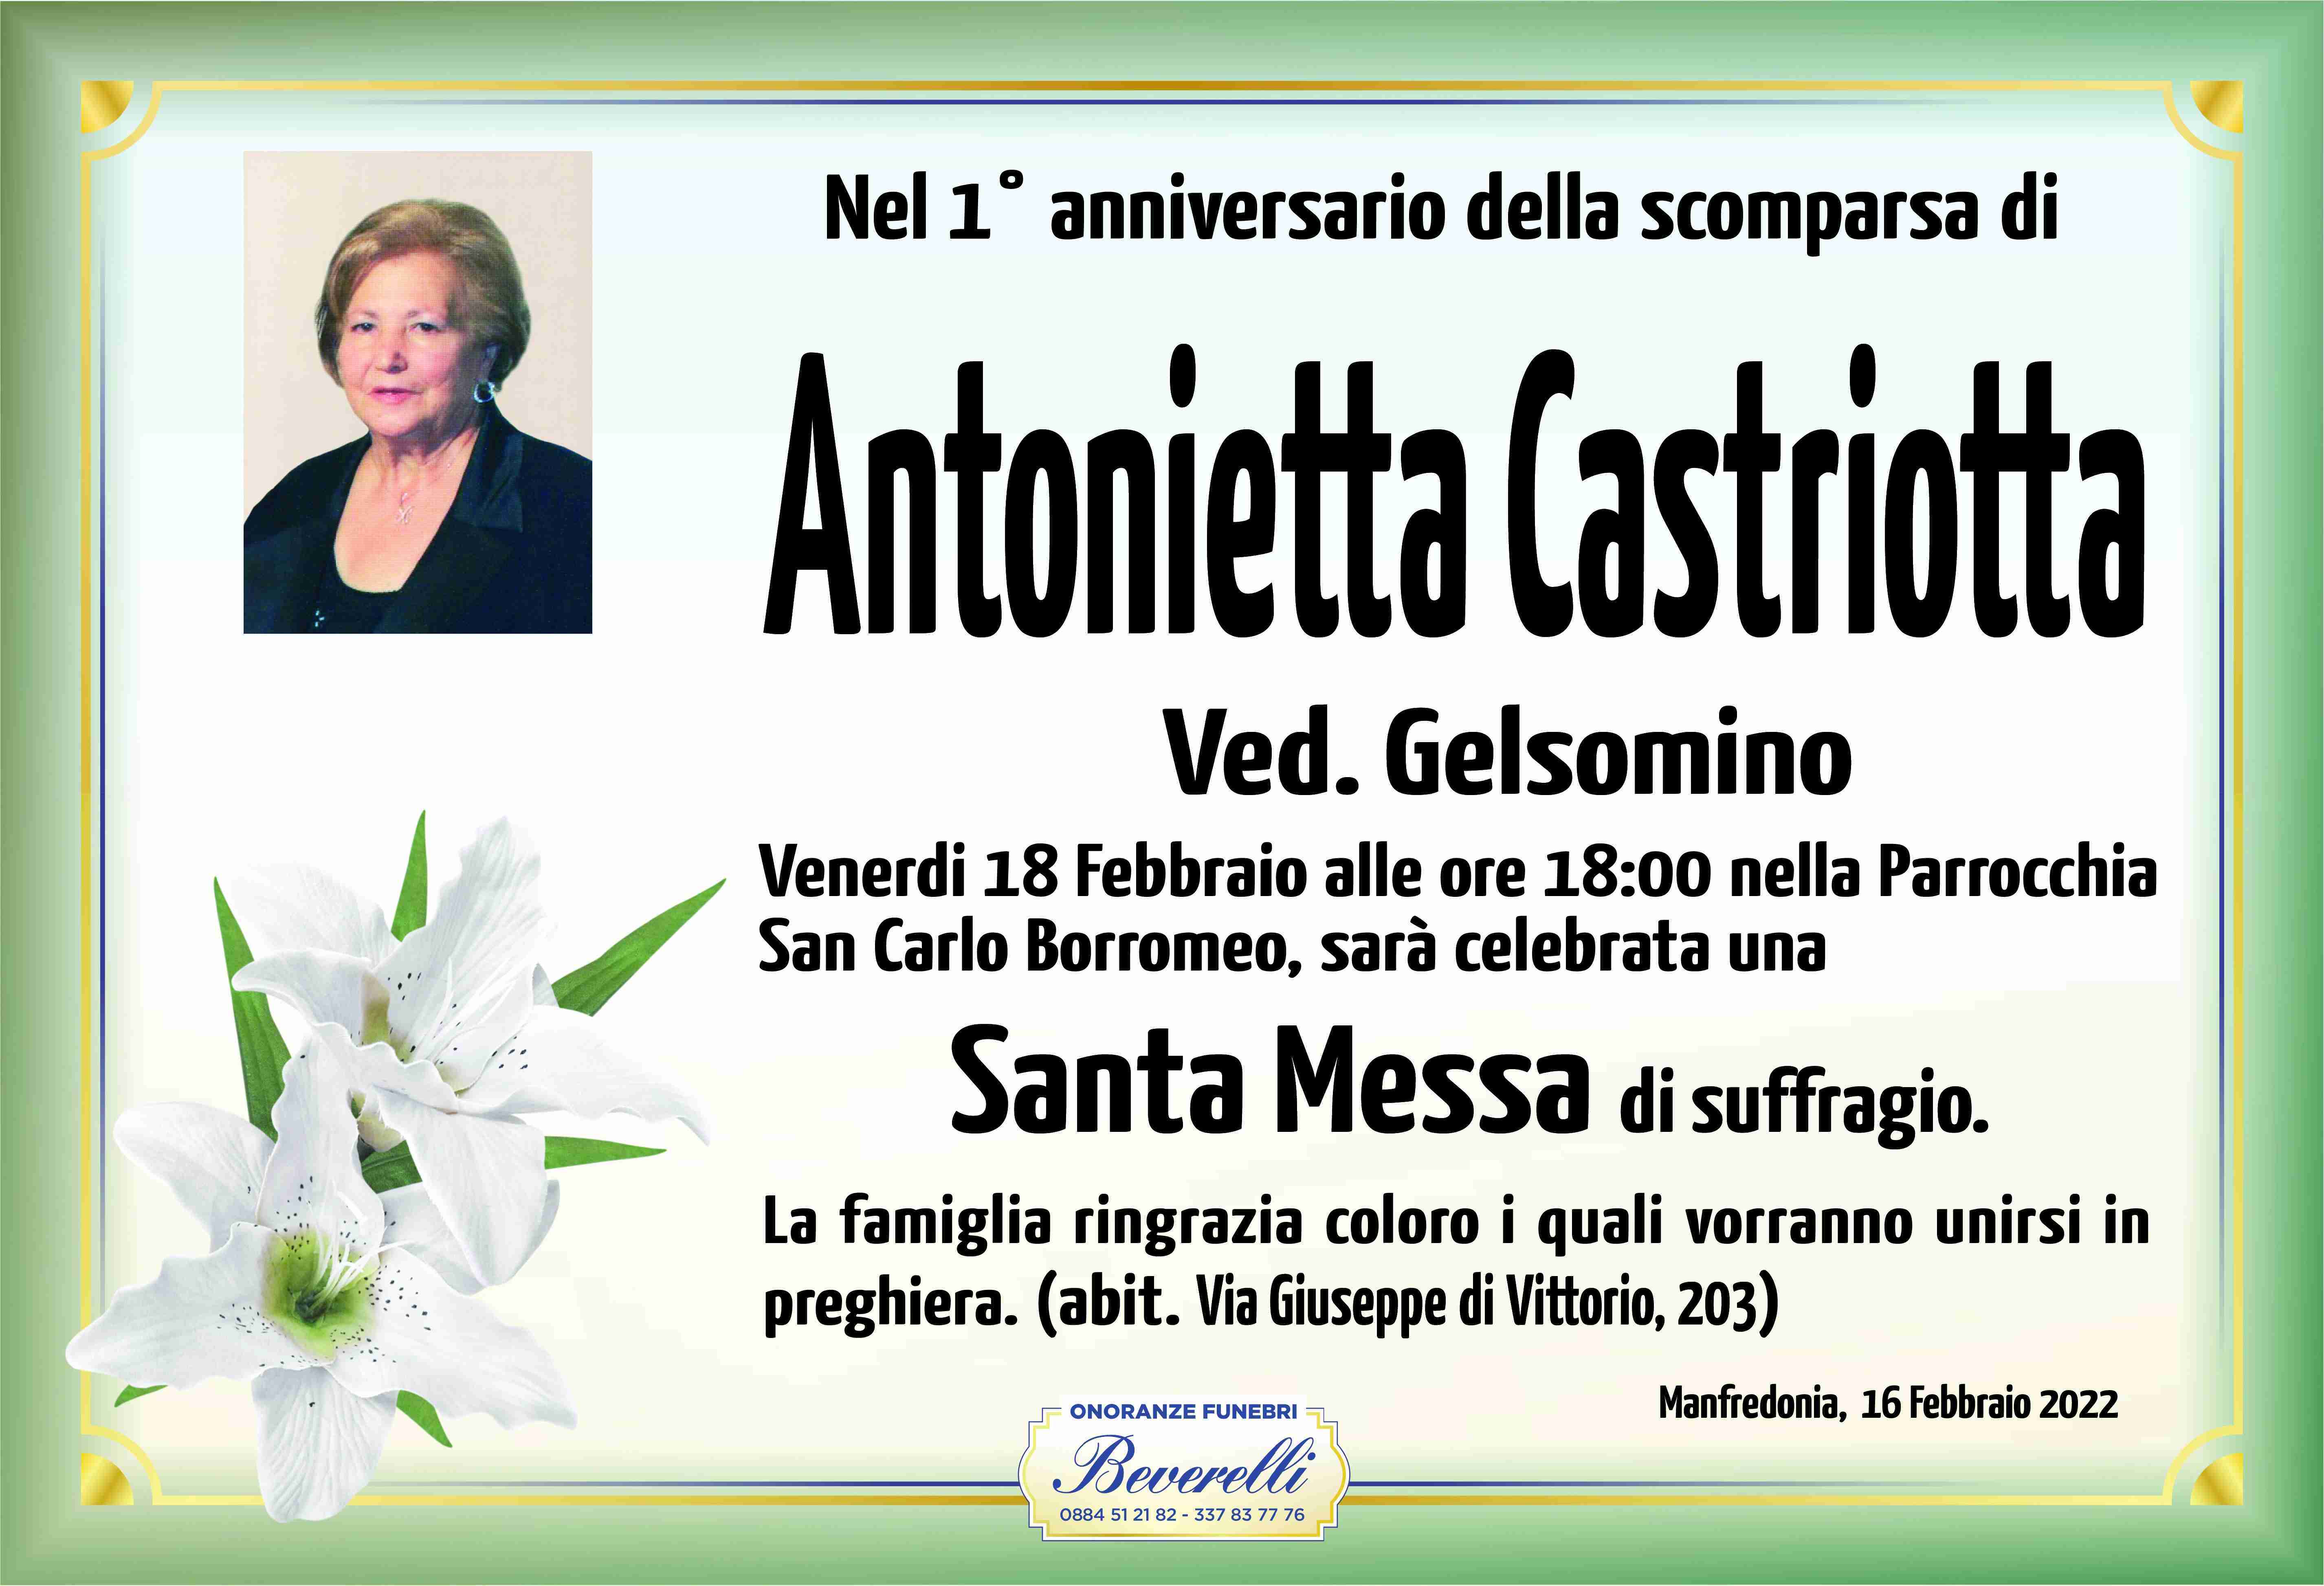 Antonietta Castriotta